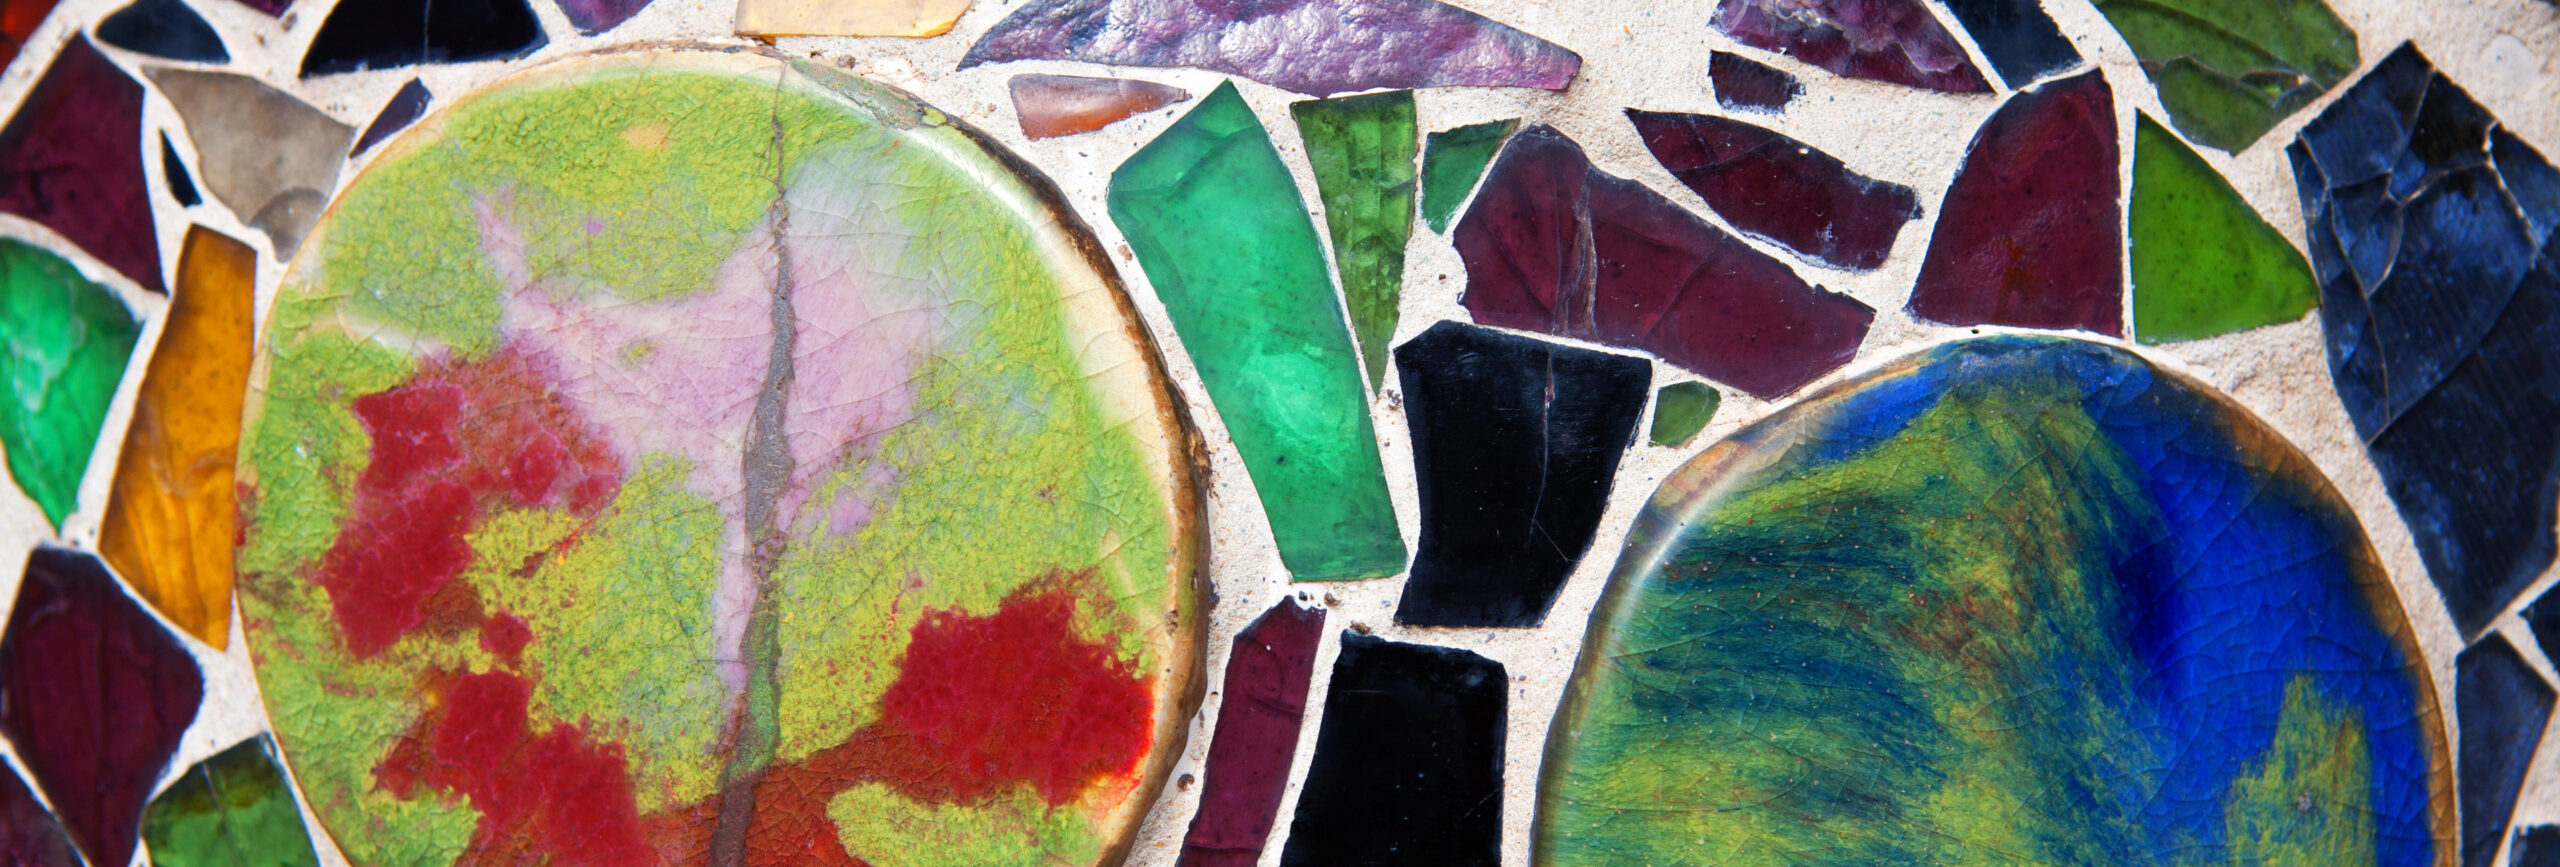 Eine Vielzahl von farbigen Mosaikglassteinen - insysta